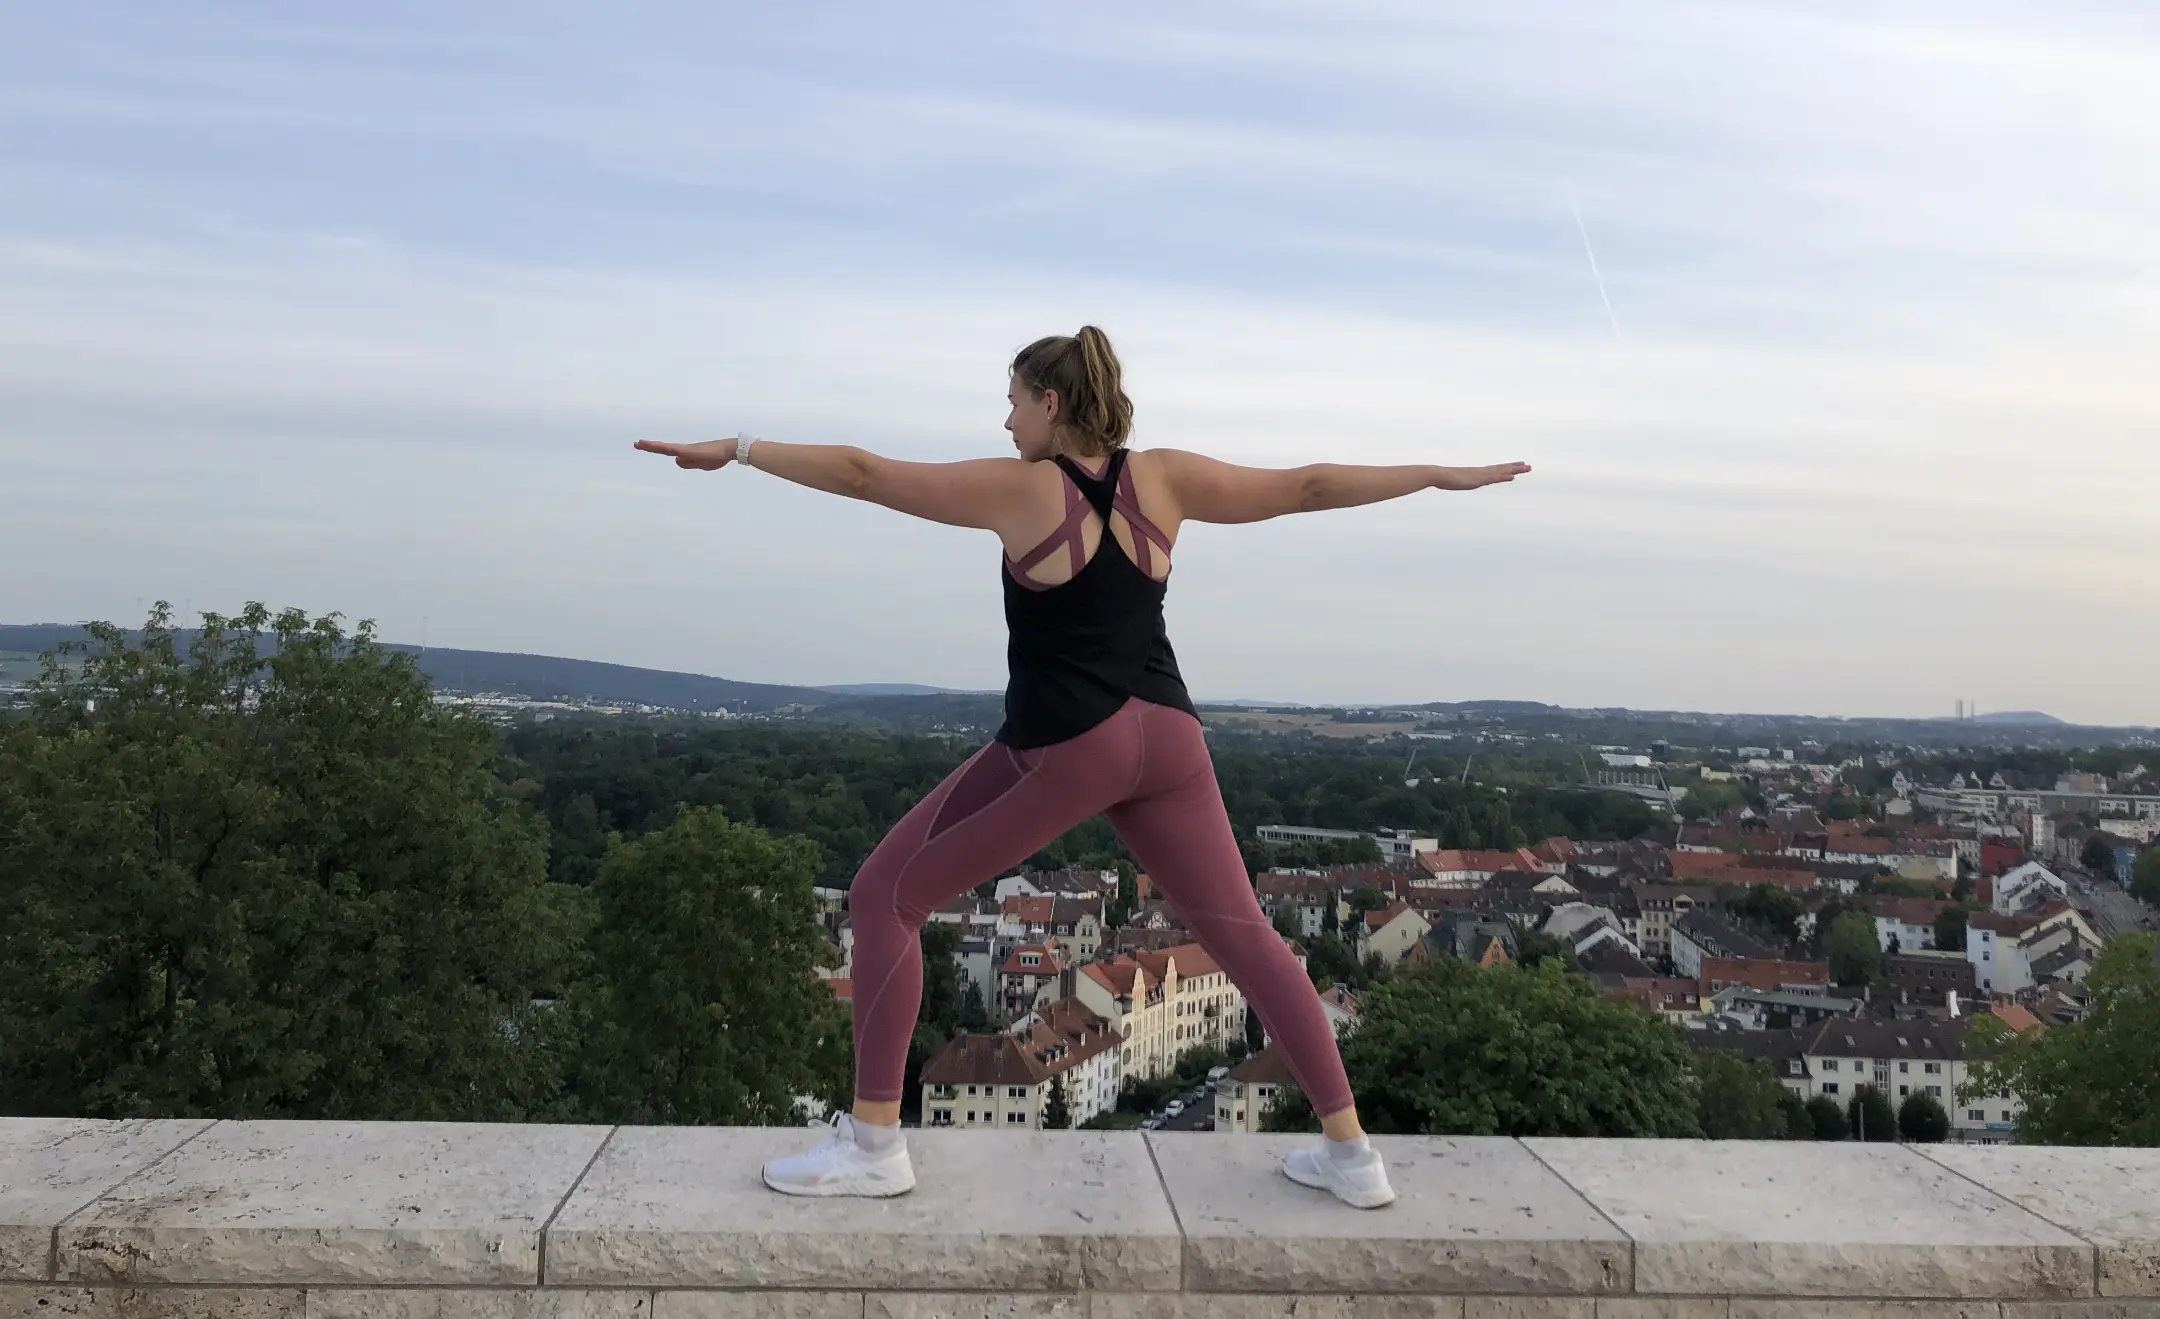 Annkathrin steht in Sportsachen der Yoga-Pose Warrior auf einer Mauer. Hinter ihr ist die Skyline von Kassel.